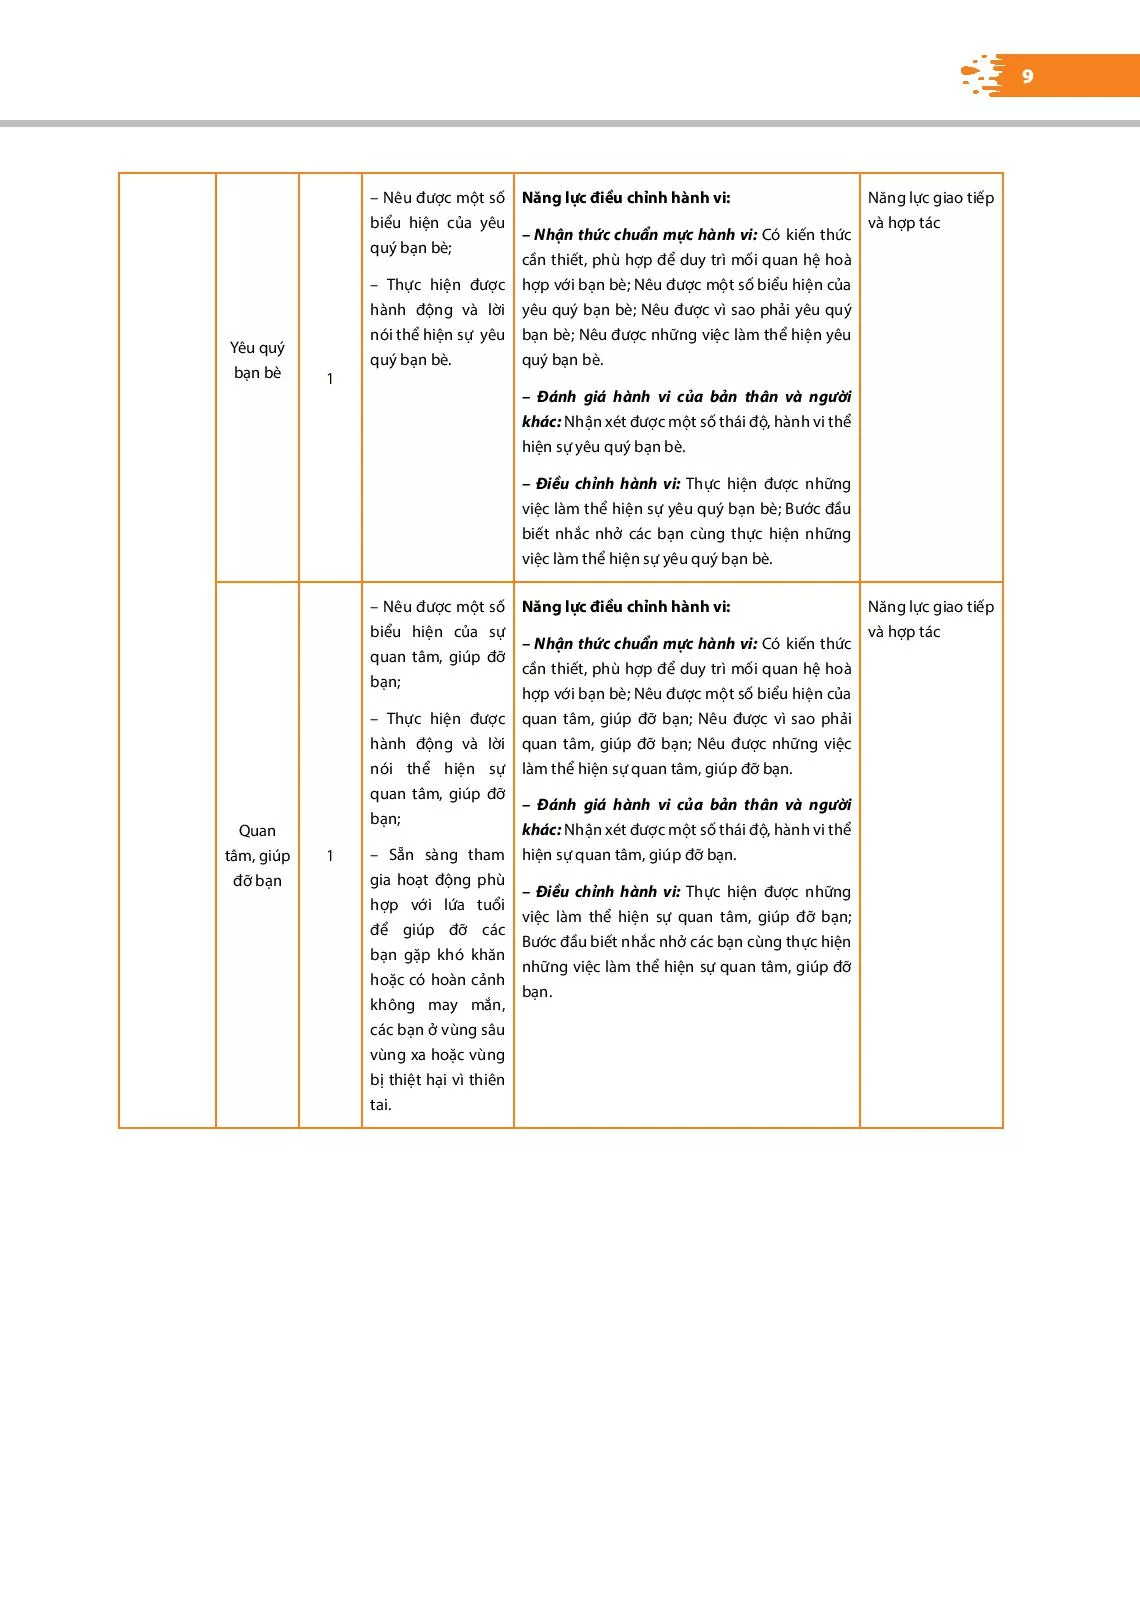 3. Cấu trúc sách giáo khoa và cấu trúc bài học